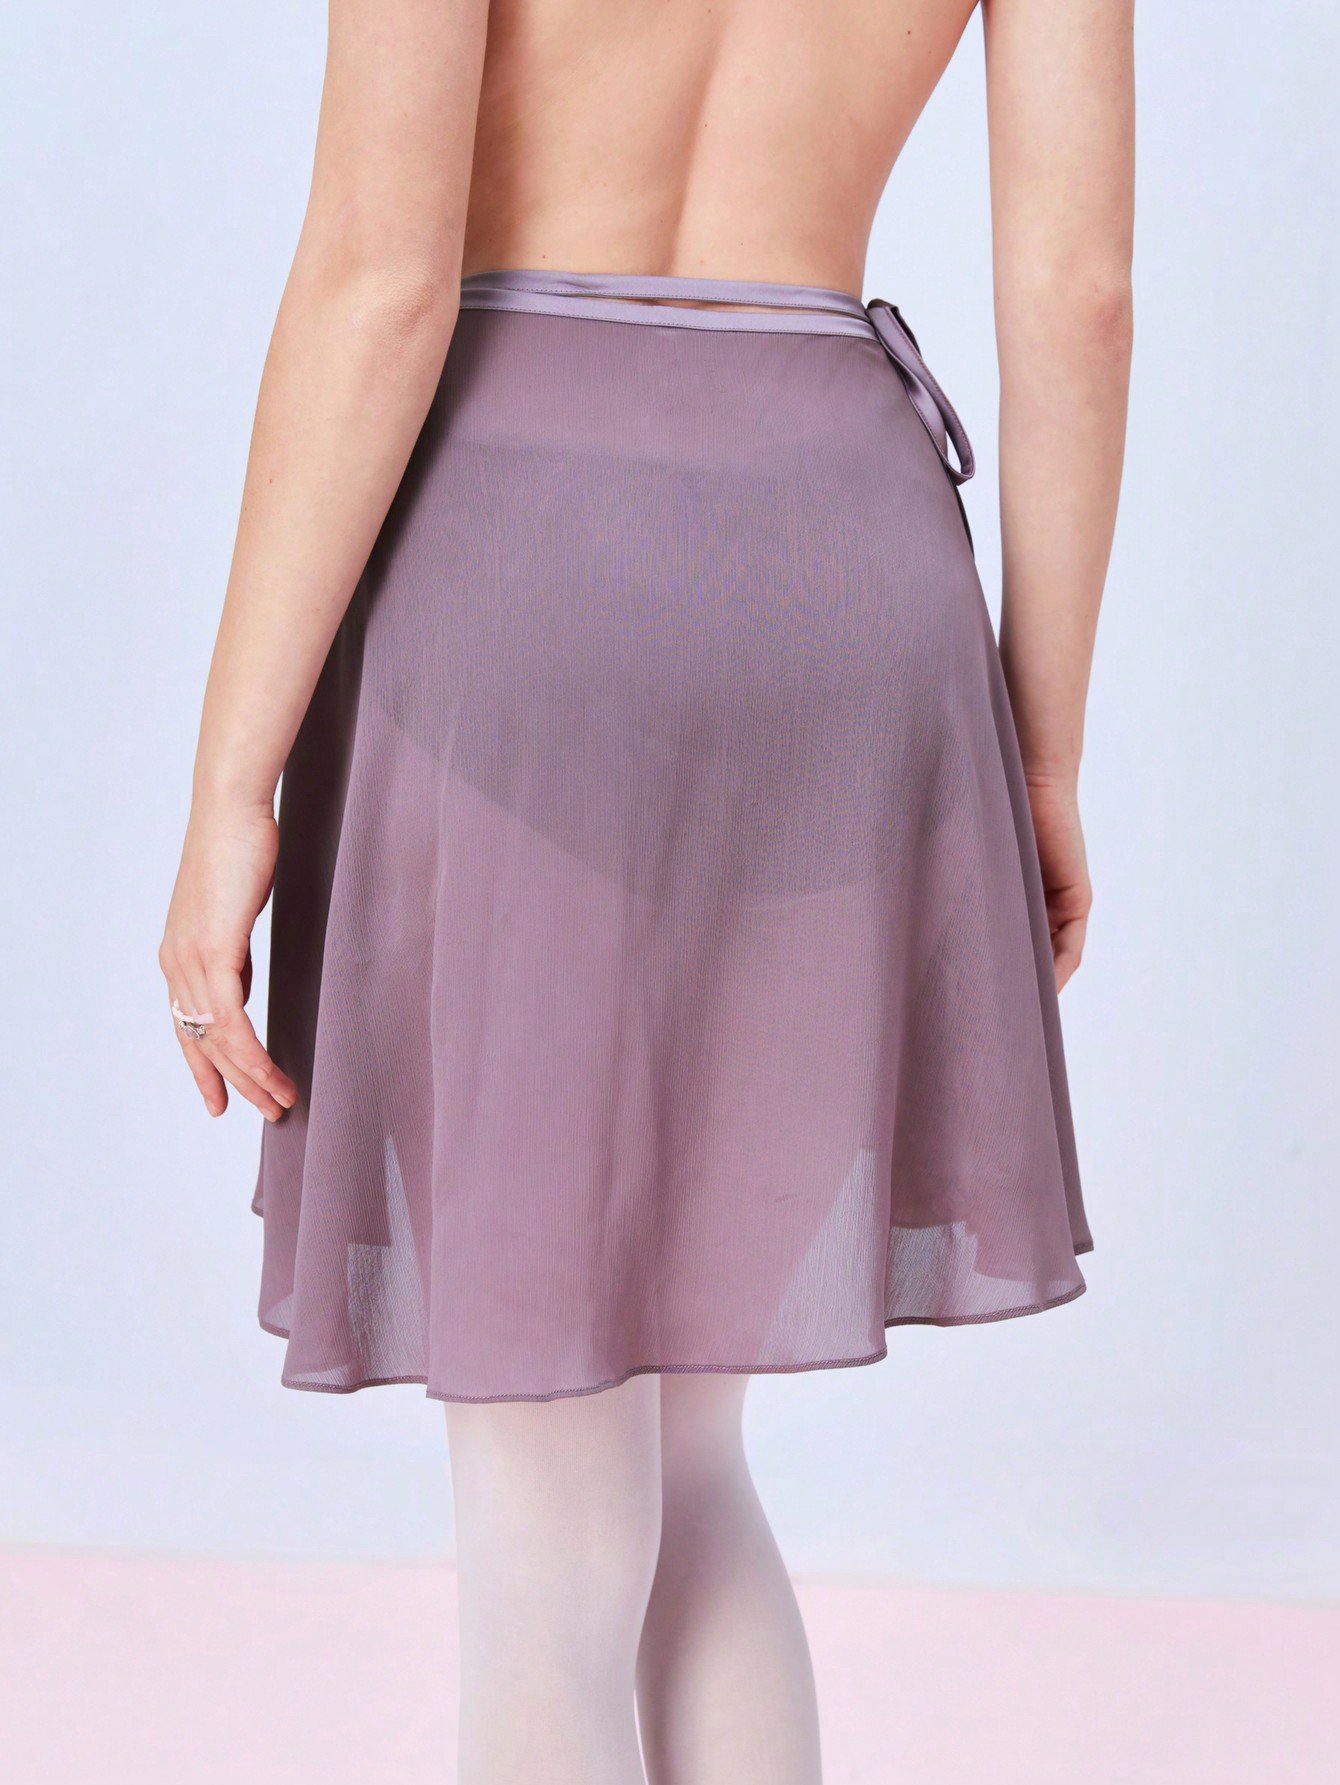 バレエインスパイア の ボウノットデザインの シースルーメッシュAラインワンピーススカート、夏用